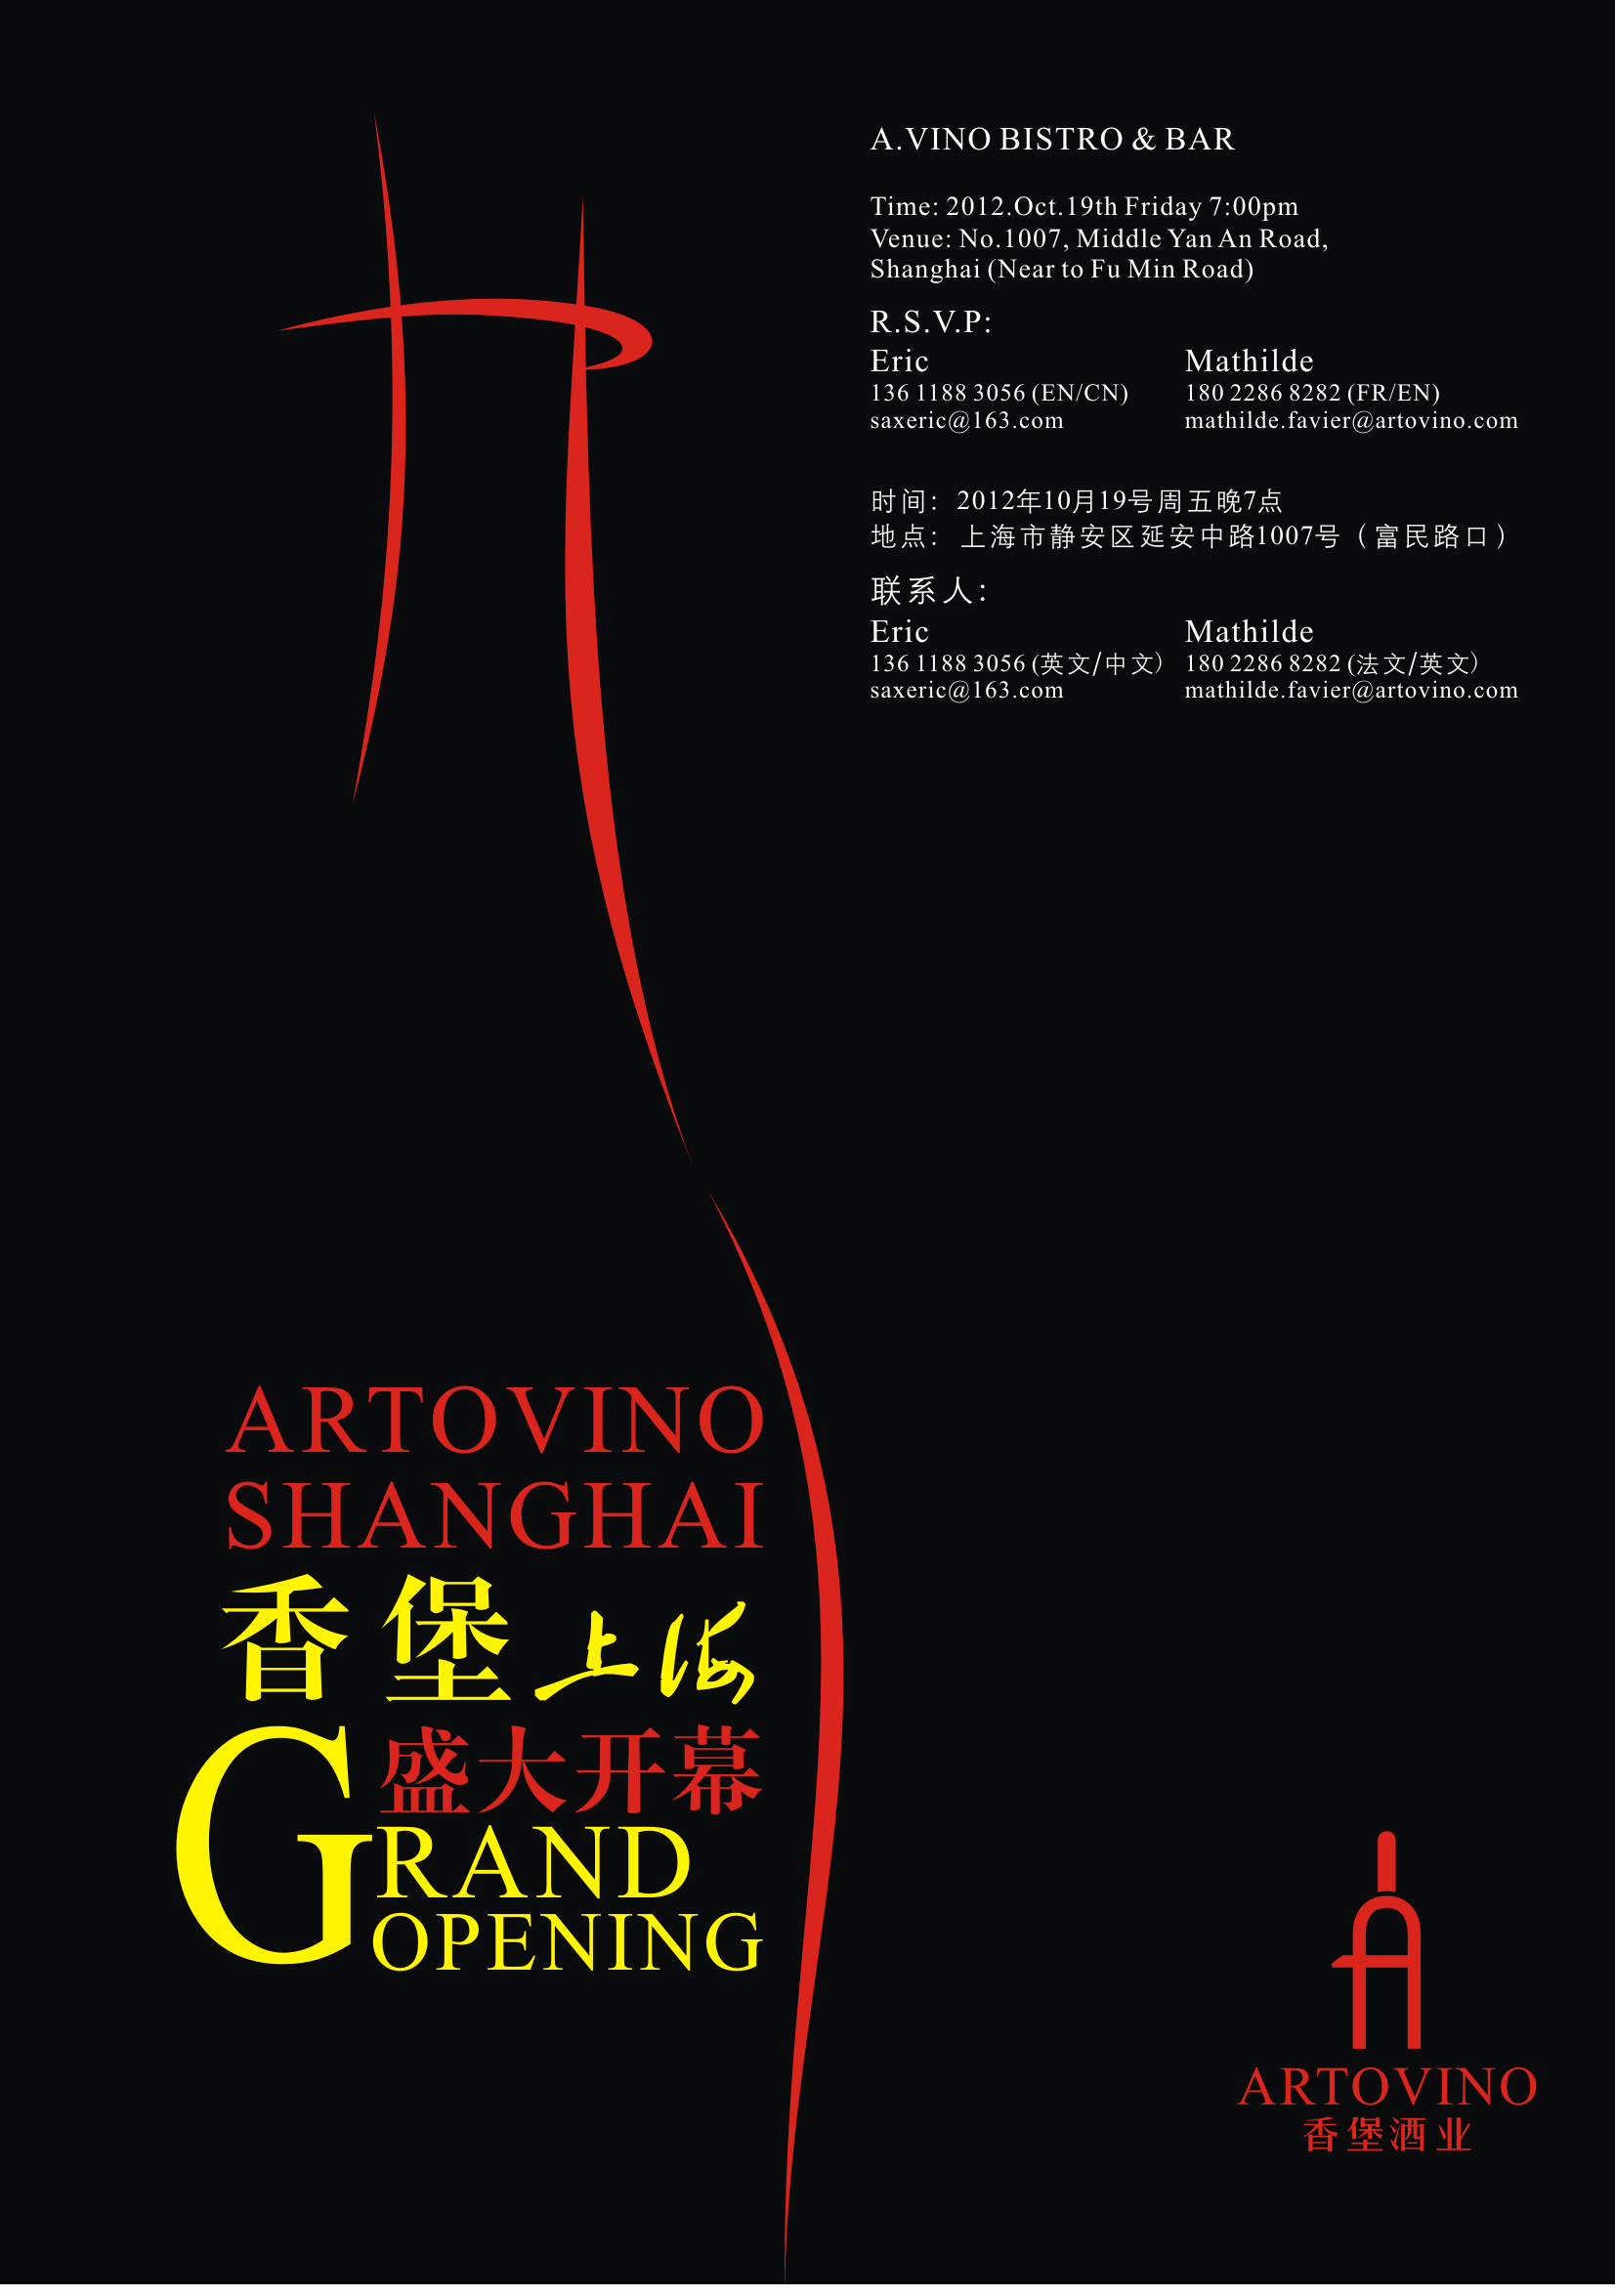 香堡（上海）盛大开业ArtoVino(Shanghai)Grand Opening!